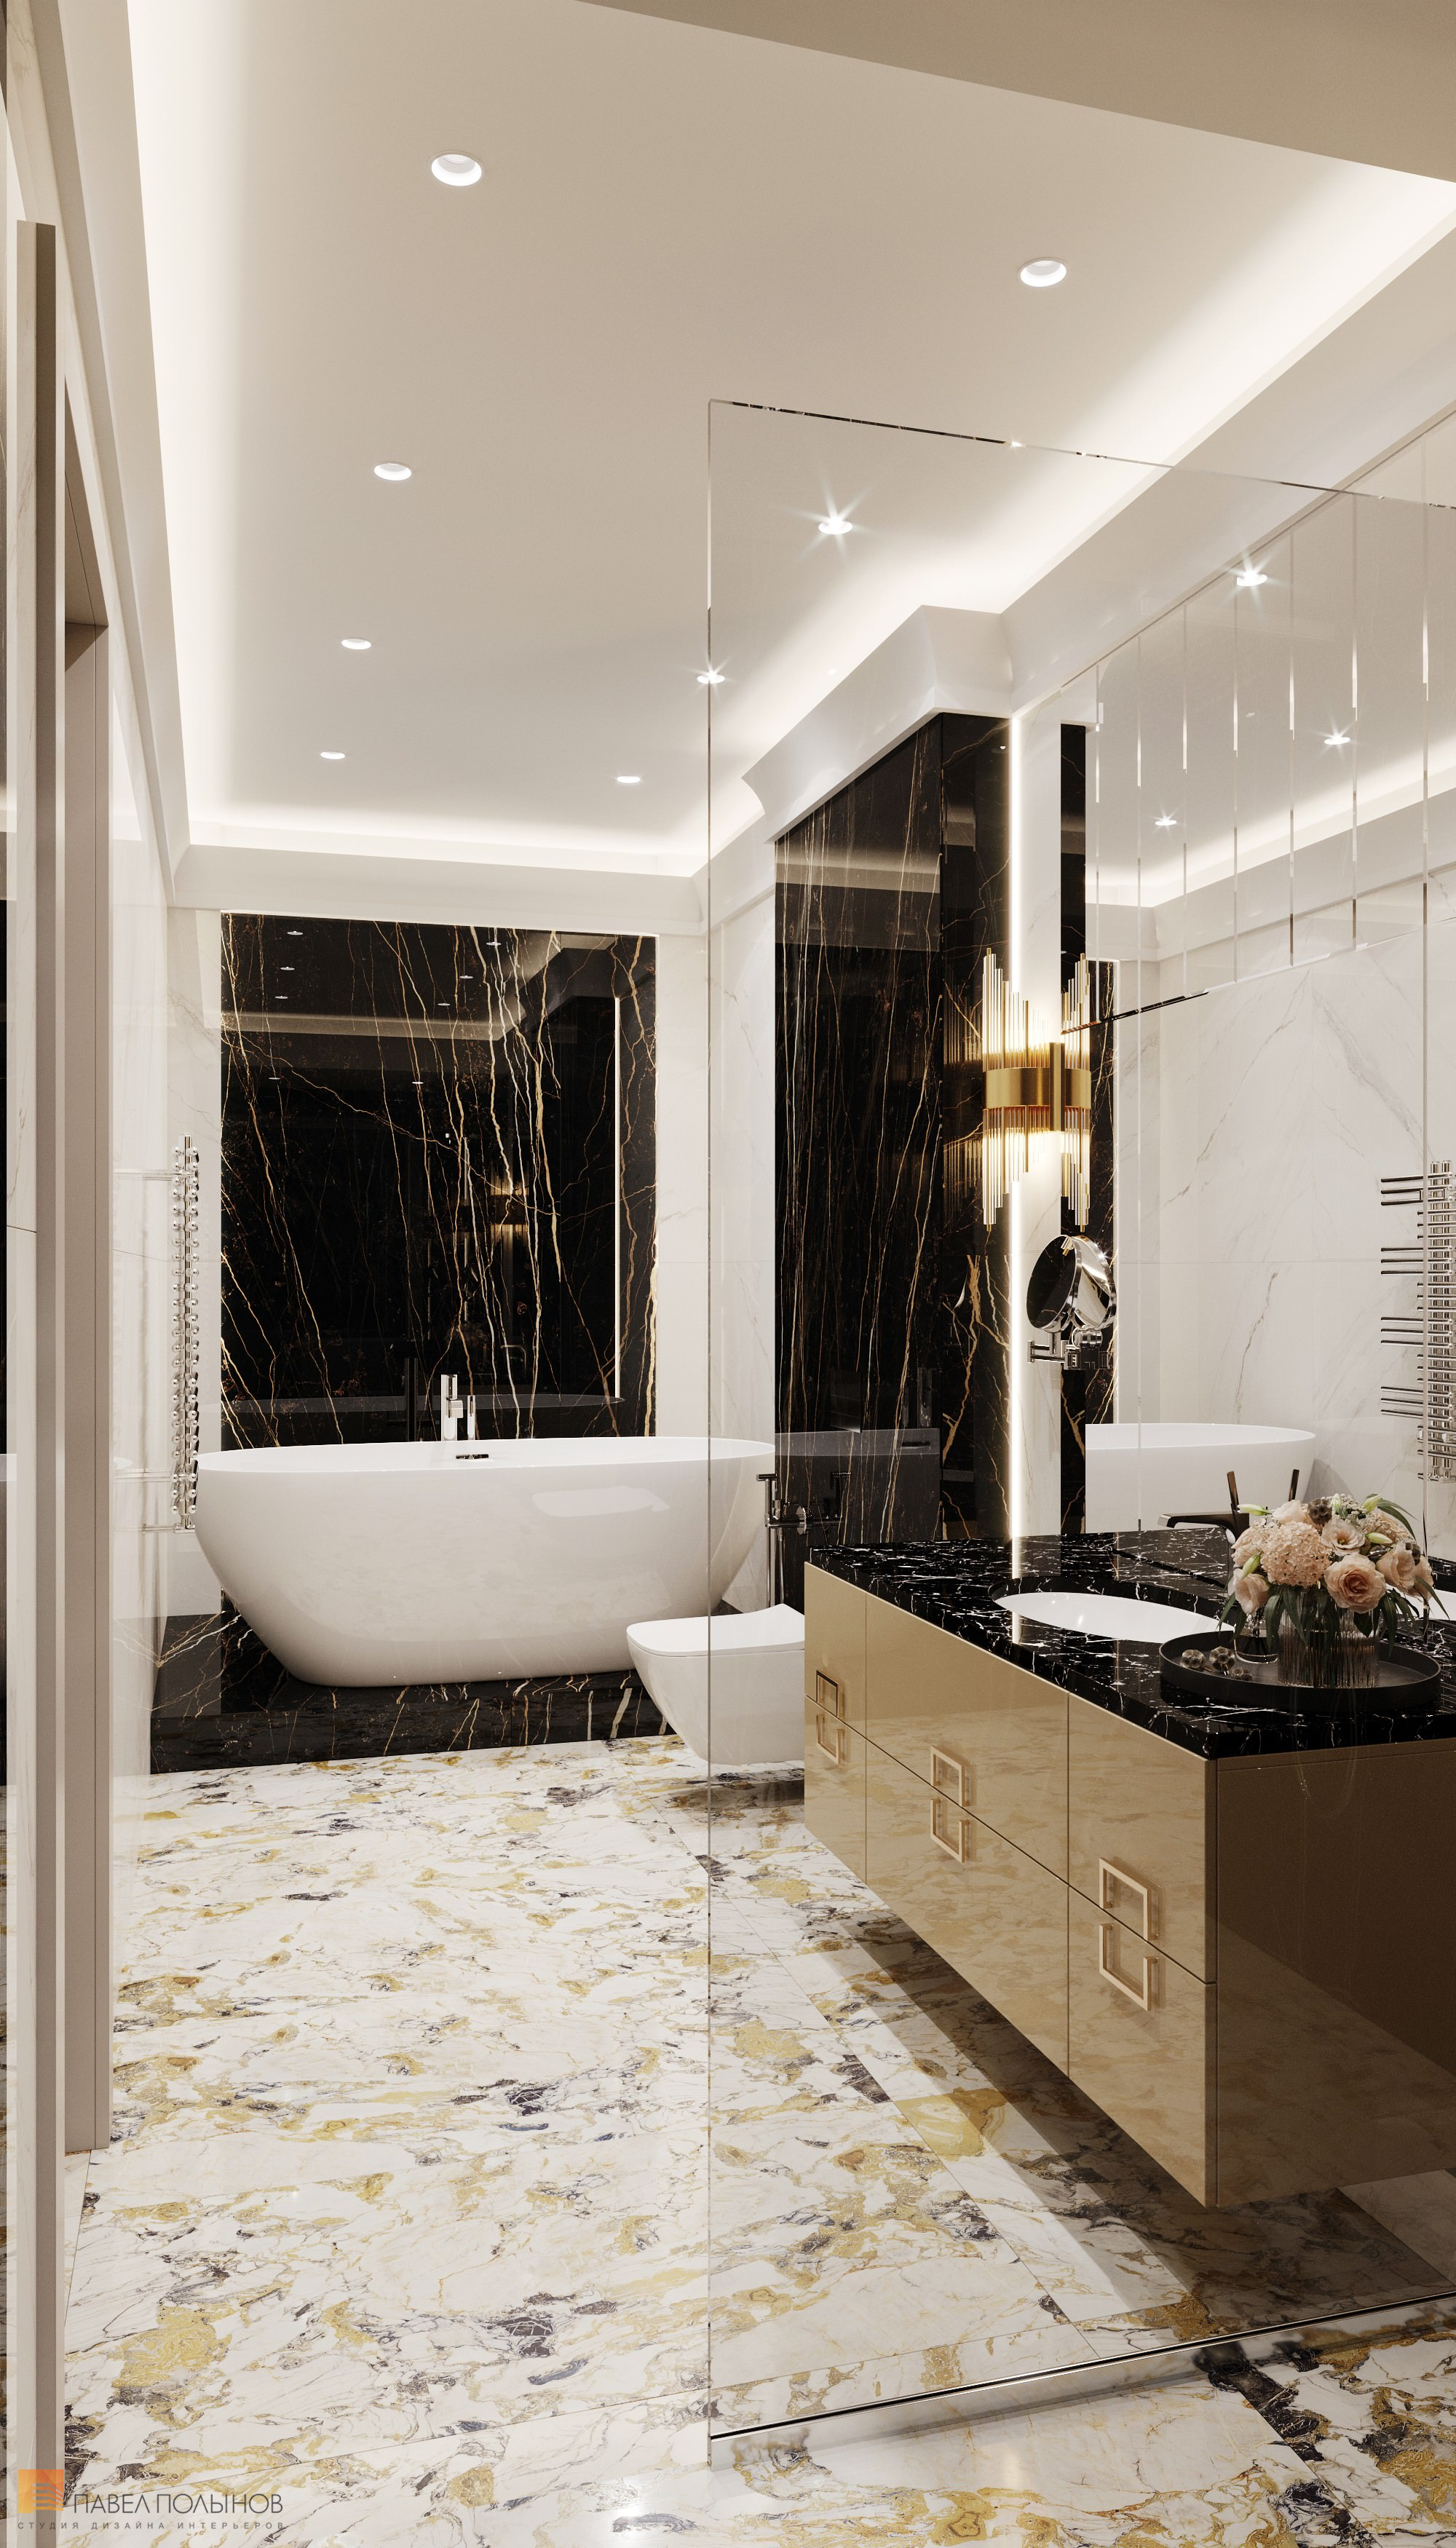 Фото дизайн интерьера ванной комнаты из проекта «Интерьер квартиры в современном стиле, 178 кв.м.»